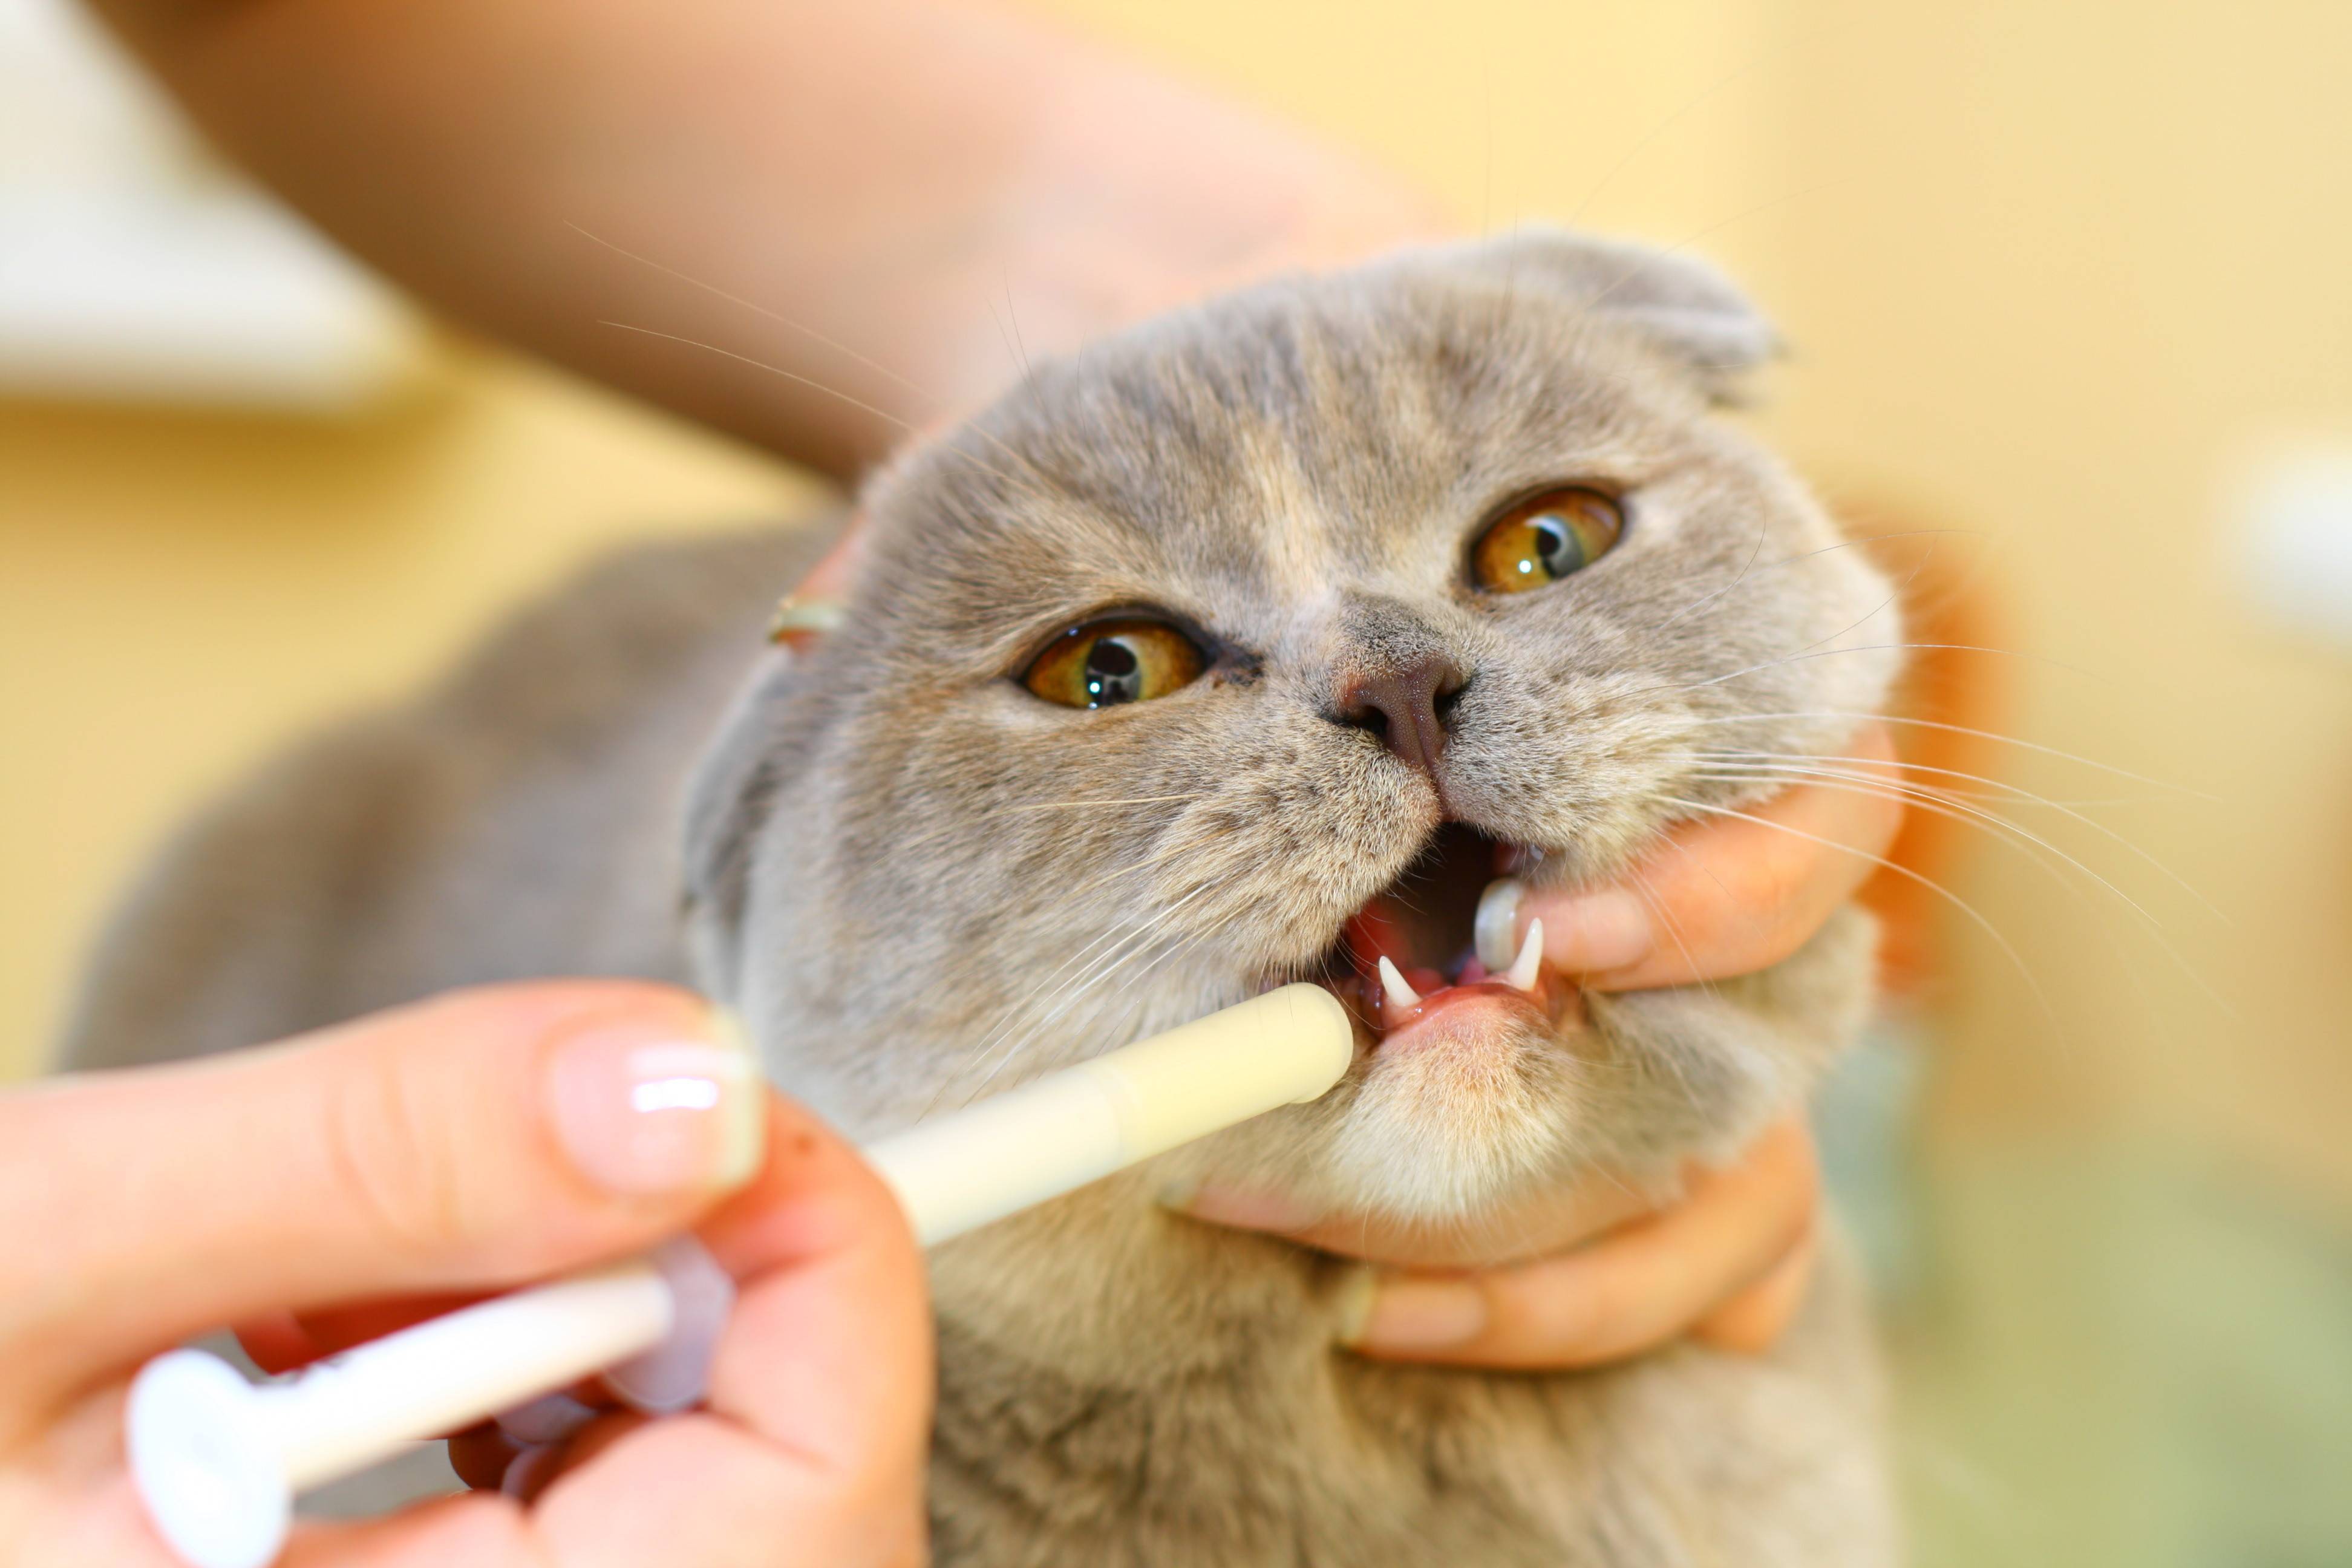 Пена у рта у кошки: причины, первая помощь
пена у рта у кошки: причины, первая помощь